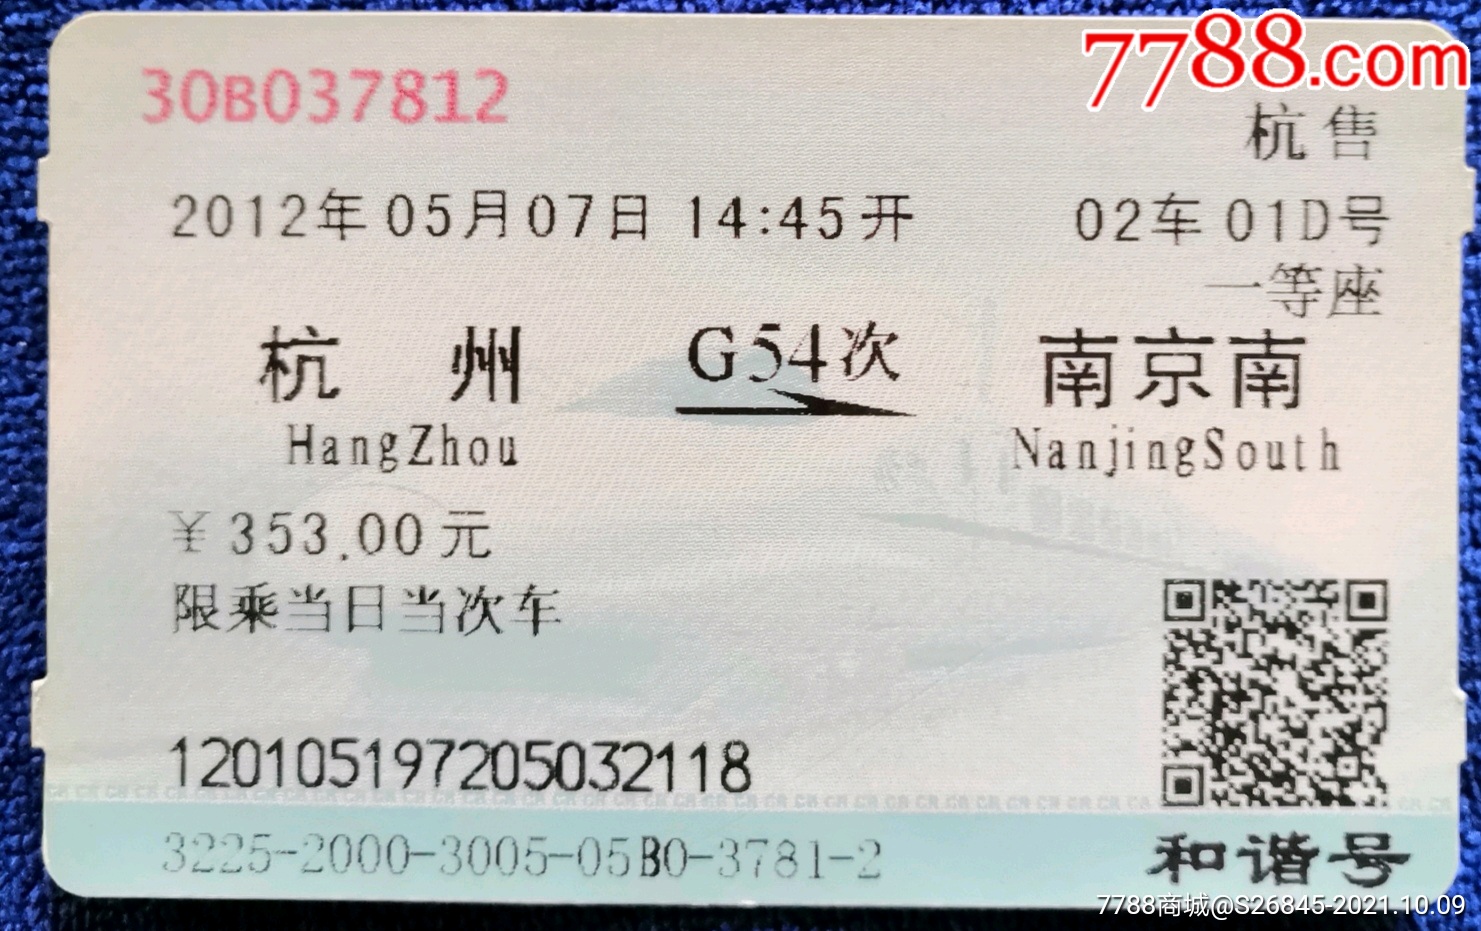 >> 杭州→南京南g54次:和谐号,火车票